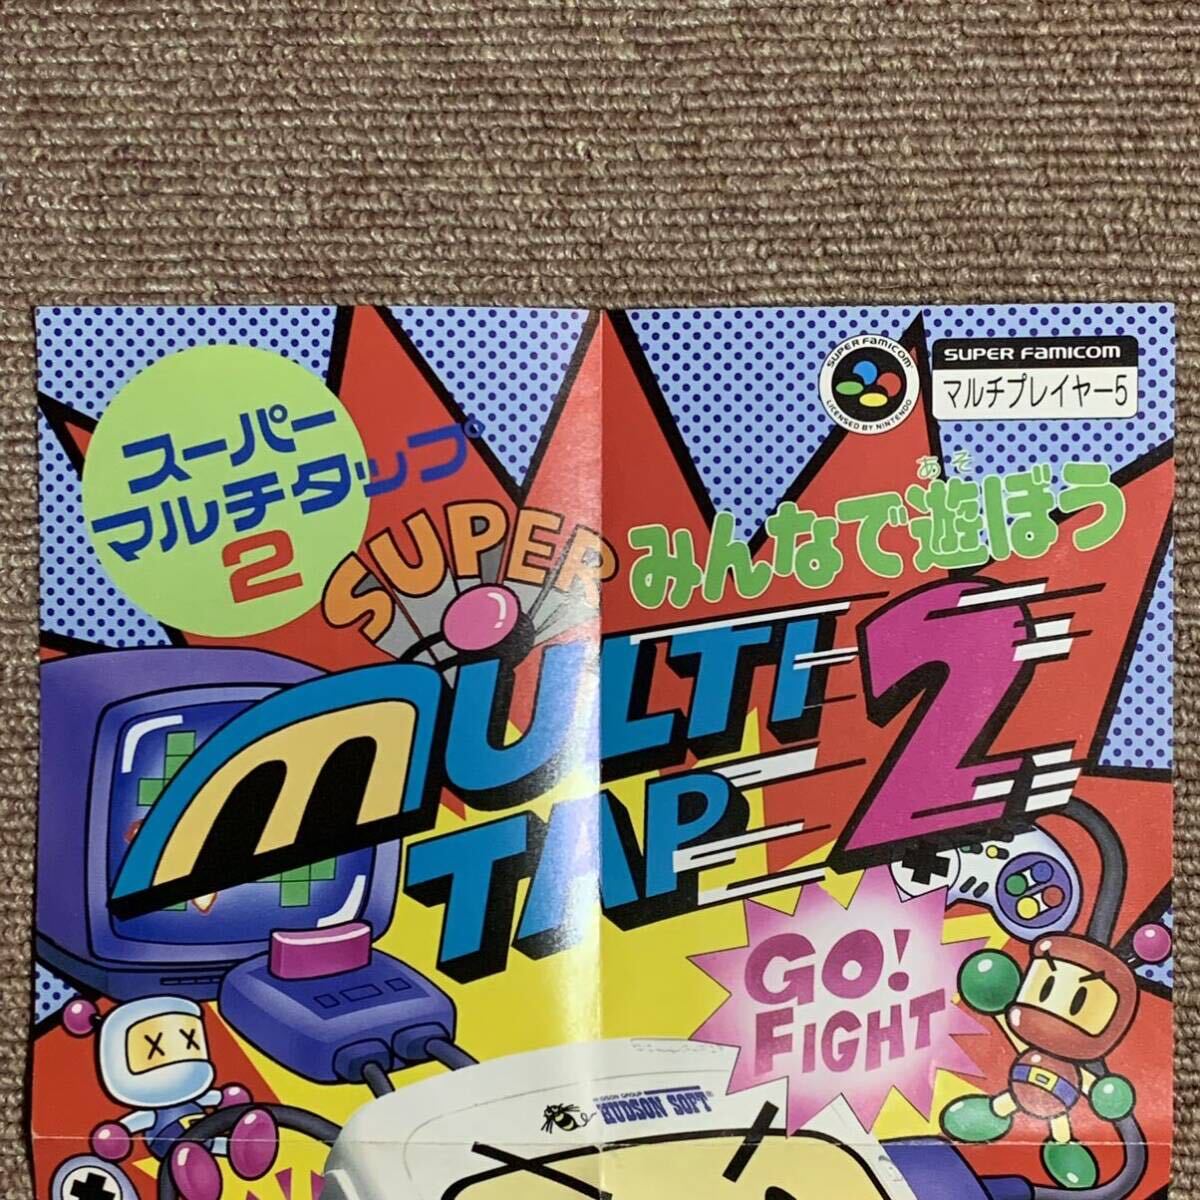 [ Super Famicom ] super multi tap 2 leaflet Flyer pamphlet // SFC nintendo Nintendo Hsu fami game leaflet 